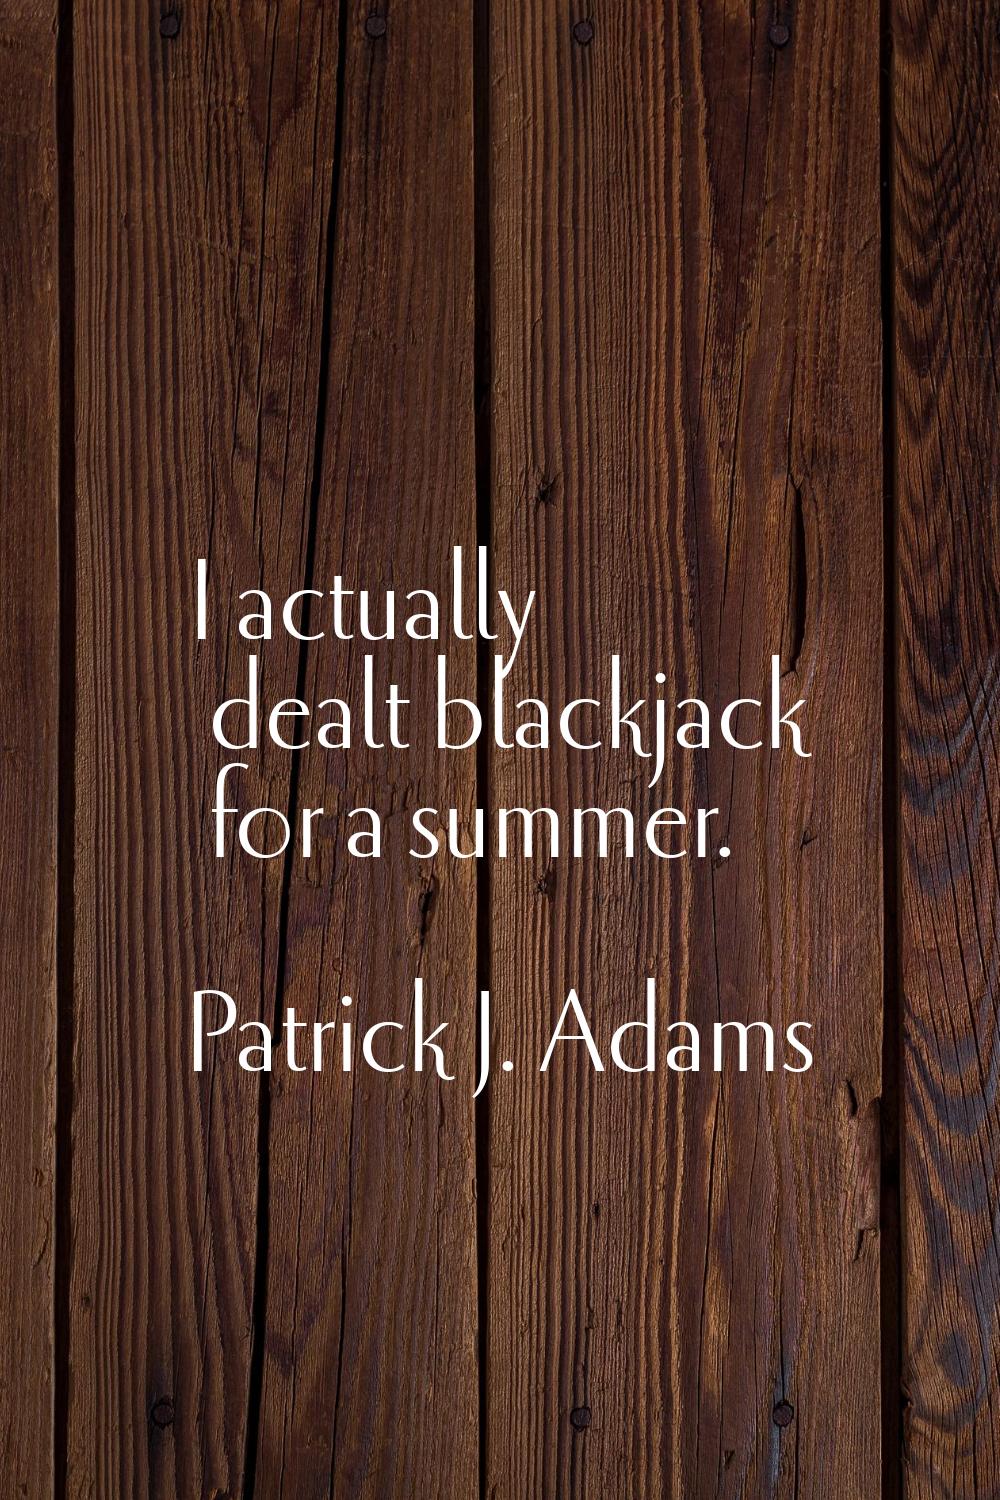 I actually dealt blackjack for a summer.